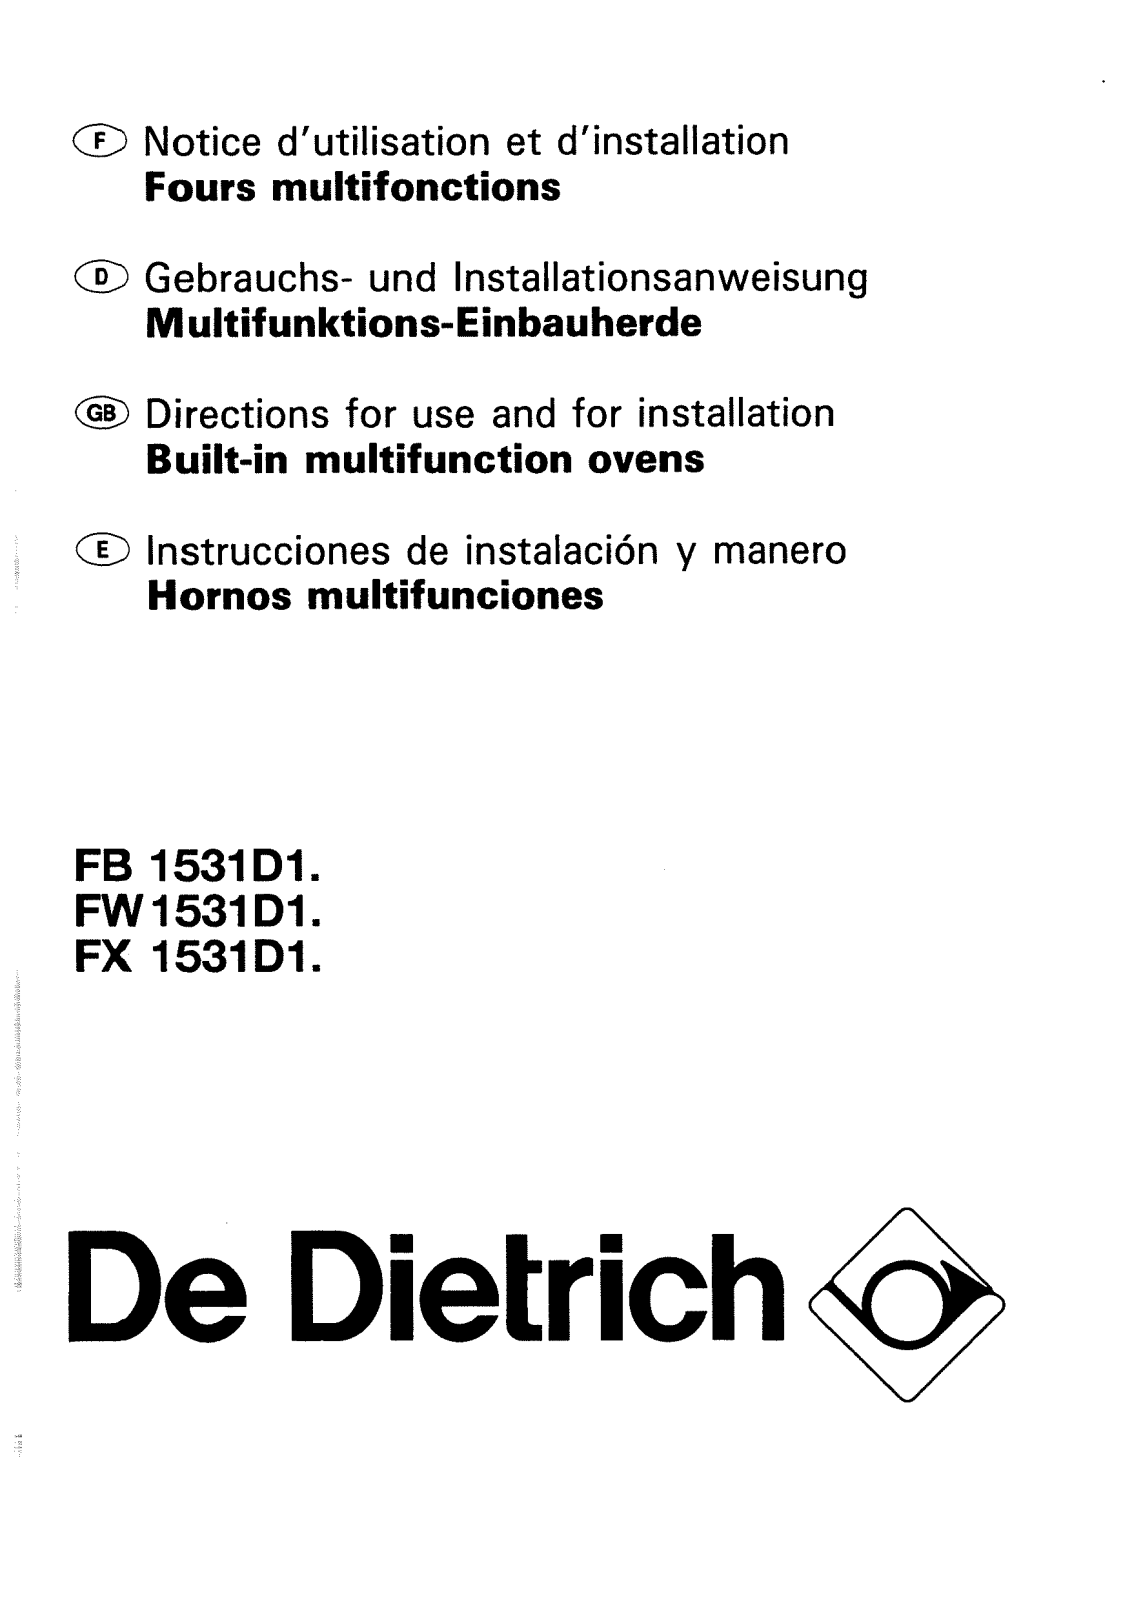 De dietrich FB1531D1, FW1531D1, FX1531D1 User Manual